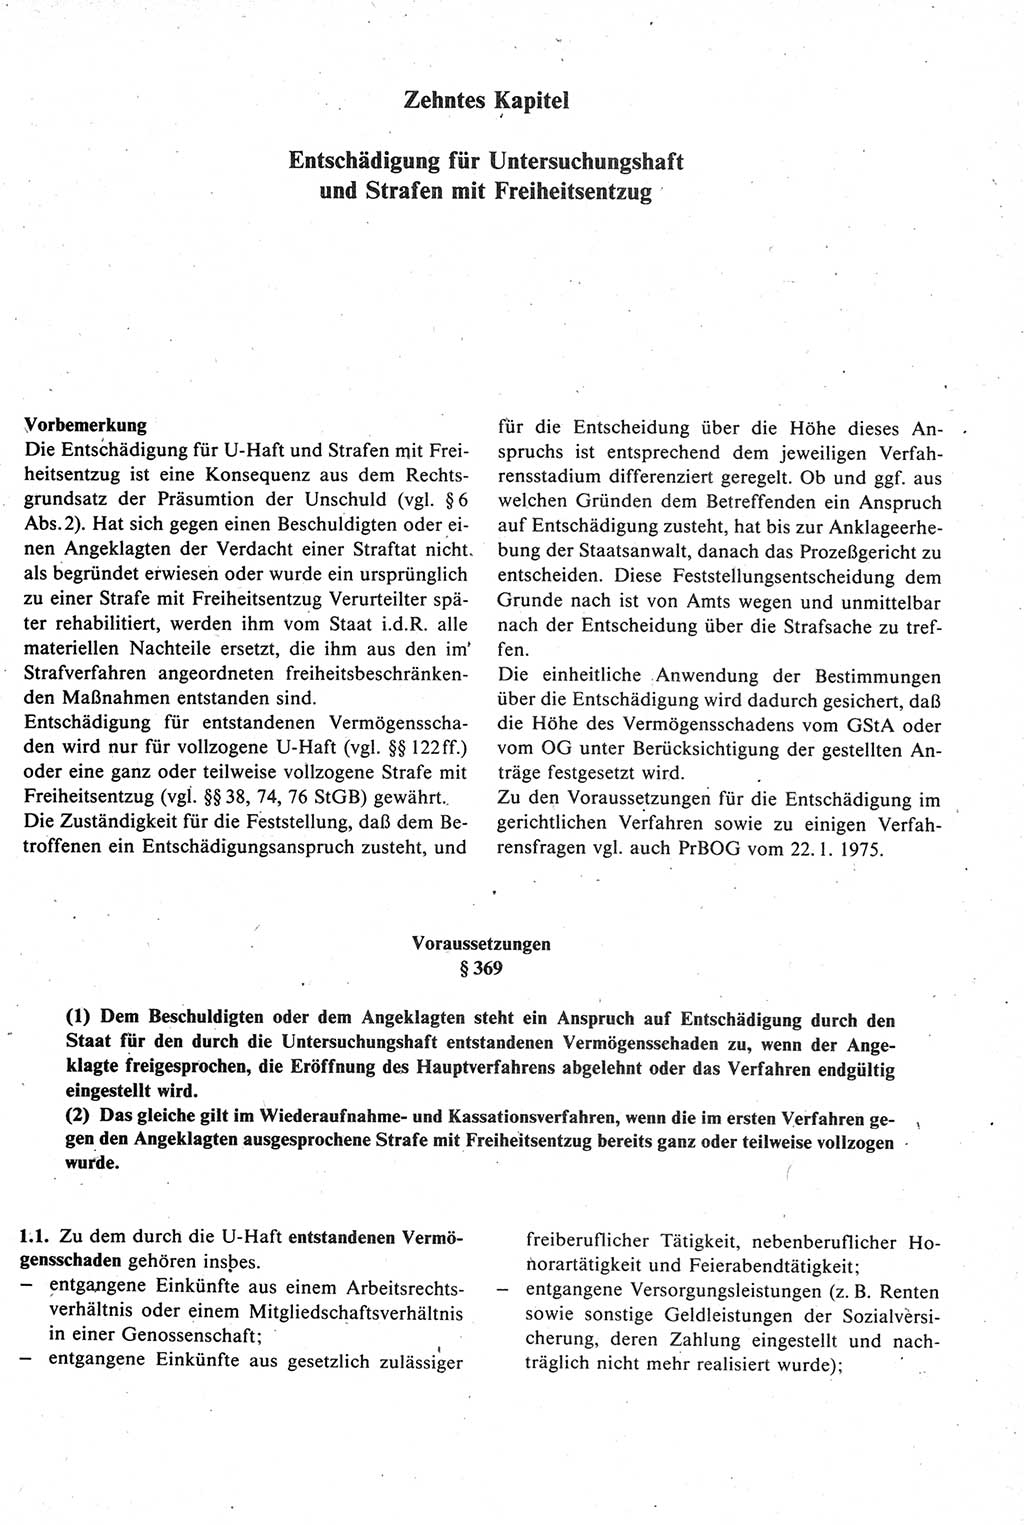 Strafprozeßrecht der DDR [Deutsche Demokratische Republik], Kommentar zur Strafprozeßordnung (StPO) 1987, Seite 431 (Strafprozeßr. DDR Komm. StPO 1987, S. 431)